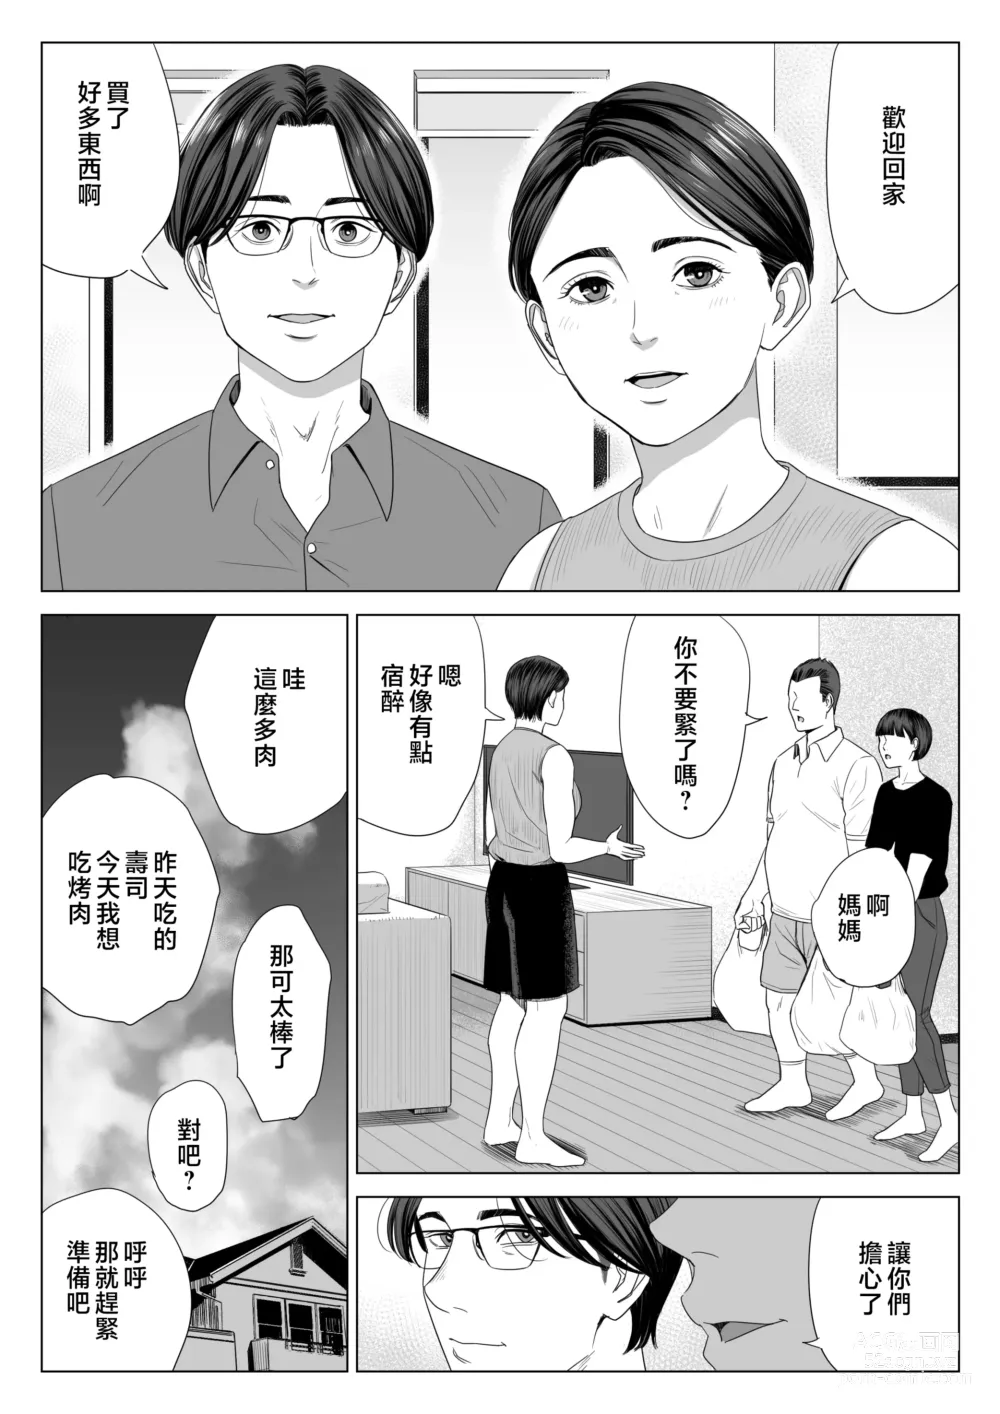 Page 55 of doujinshi Gibo no Tsukaeru Karada.